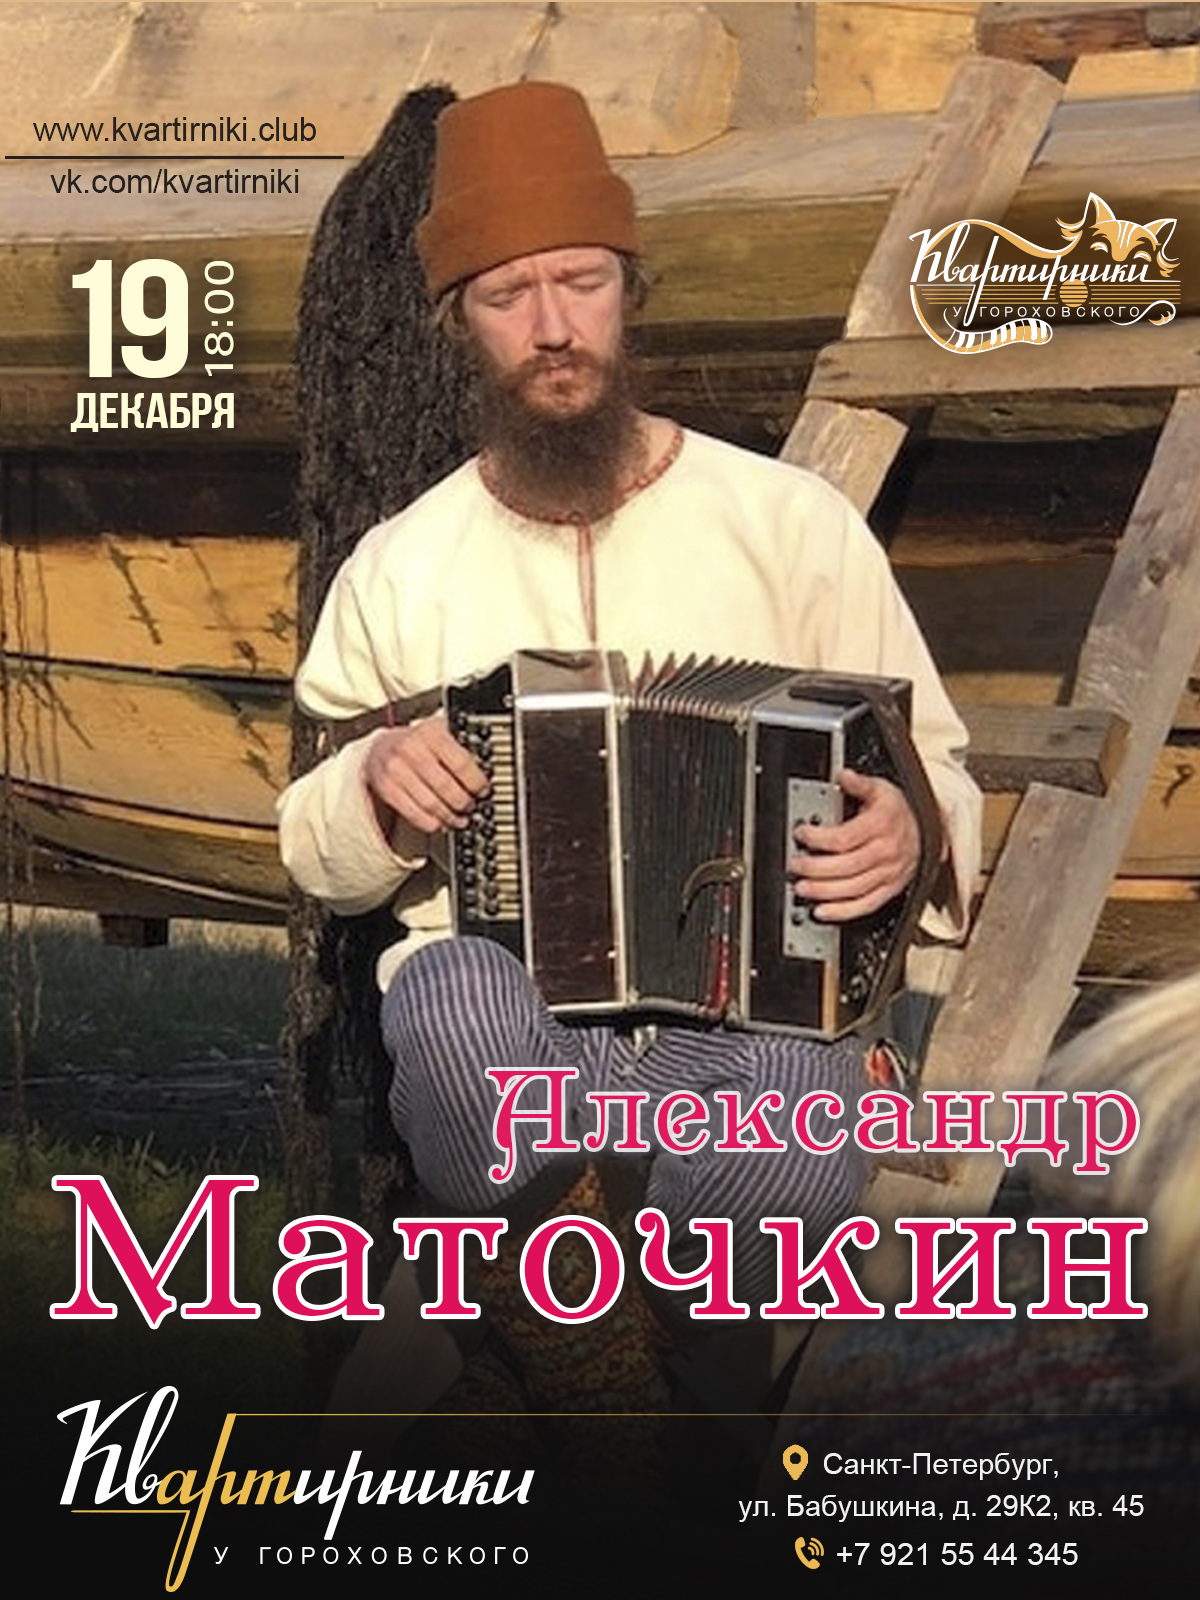 Александр МАТОЧКИН. афиша